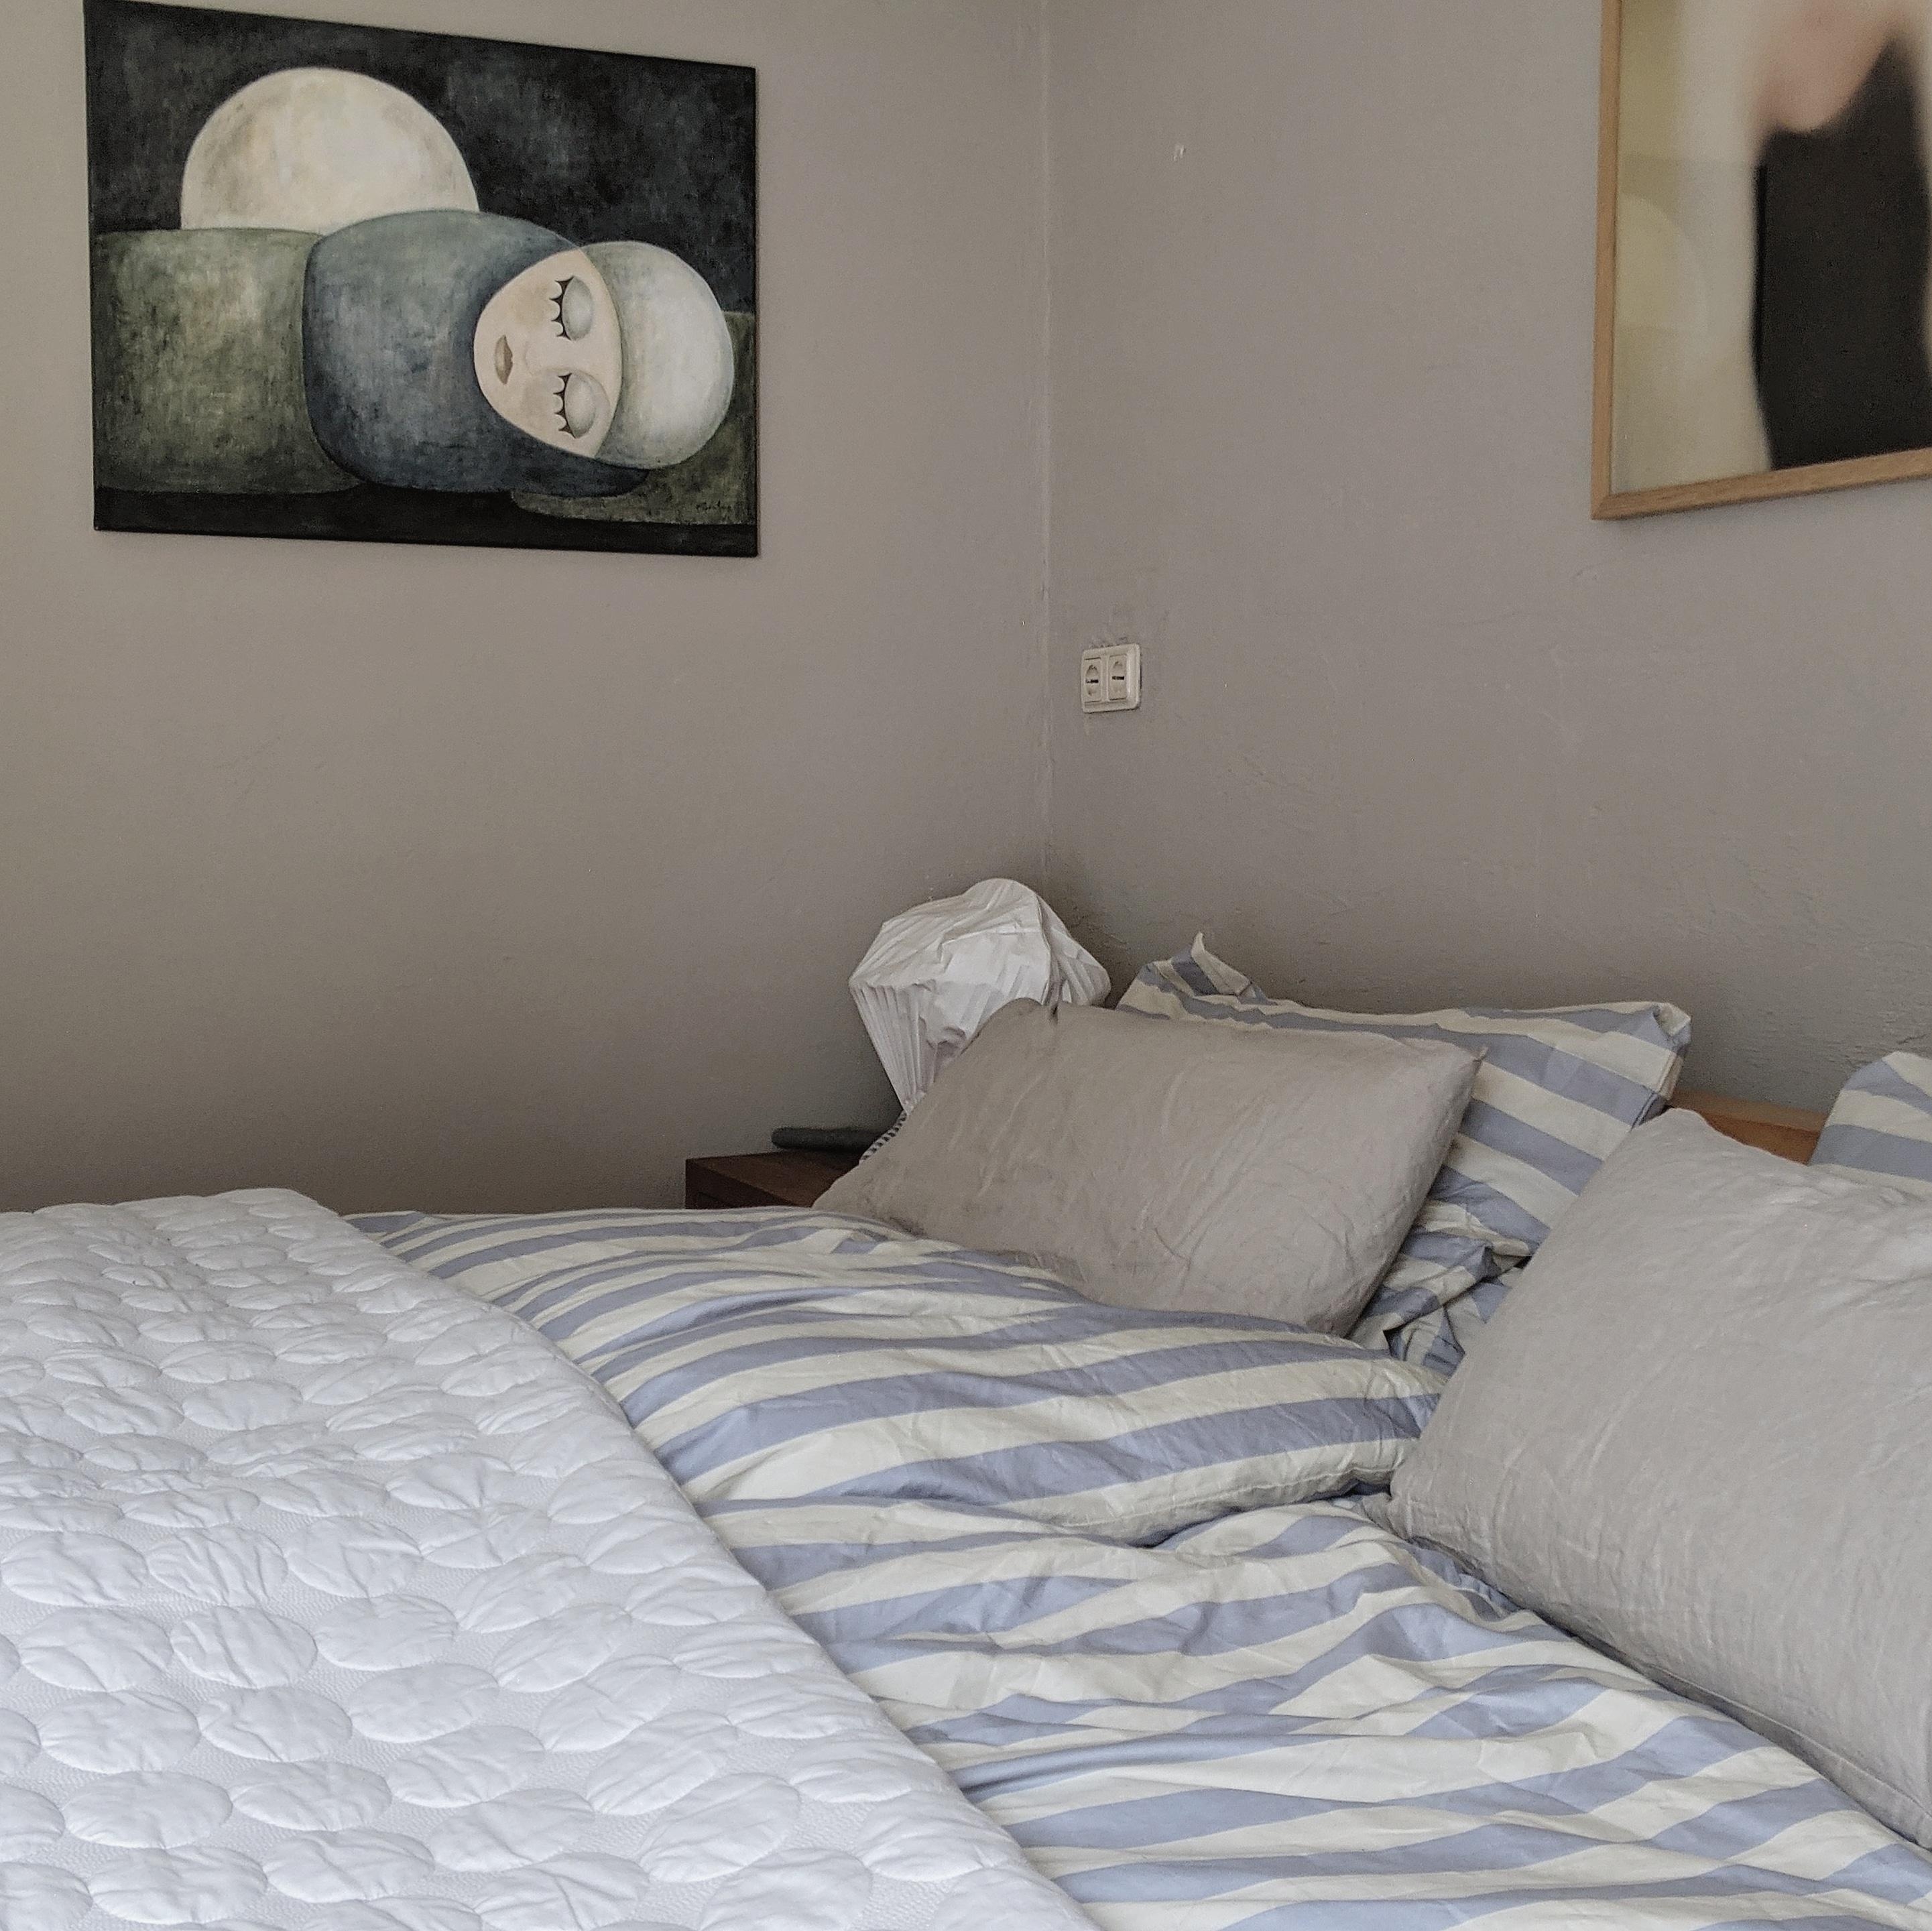 #schlafzimmer #bild#home#wohnen#living#altbau#interior#home#bett#scandinavisch#couchstyle#cozy#bilder